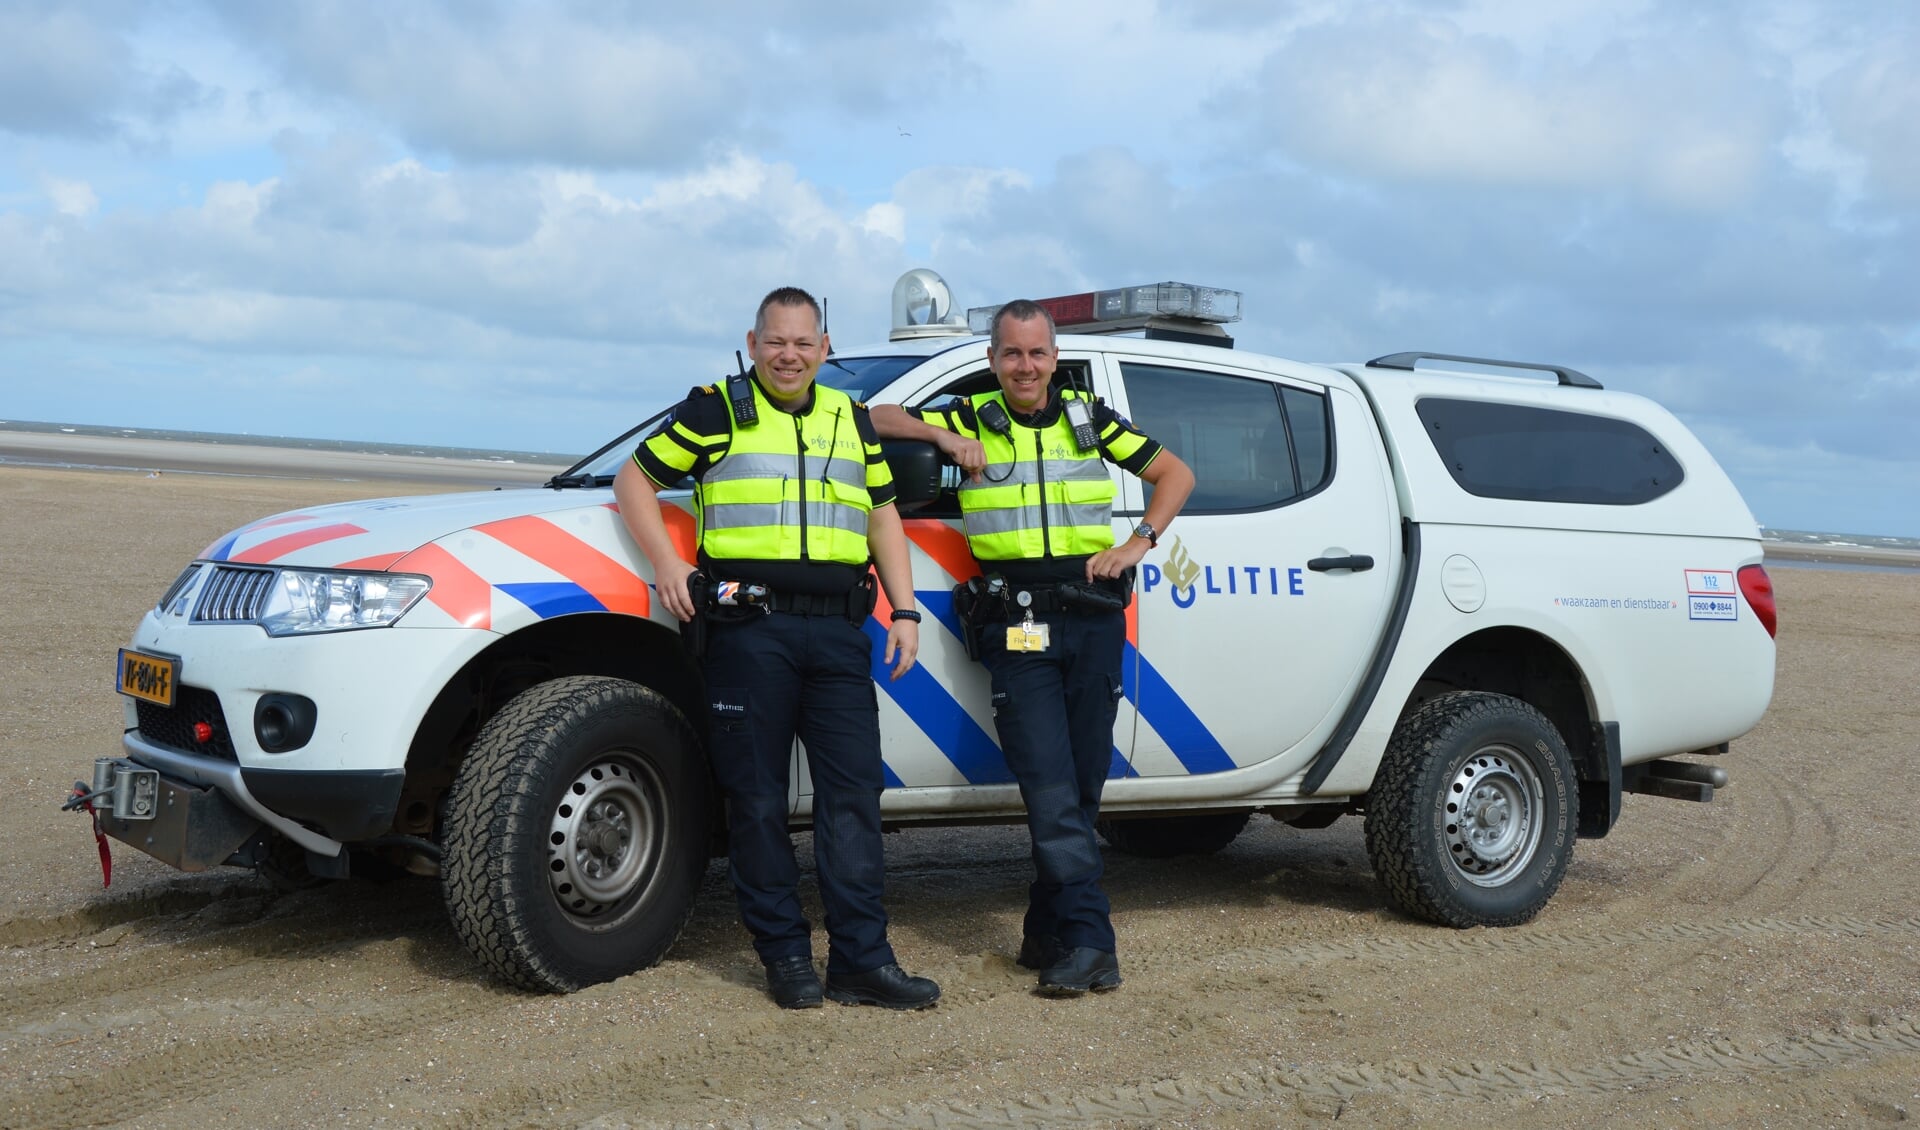 Afgelopen zomer werden er politievrijwilligers uit andere delen van het land ingezet op Goeree-Overflakkee. Die worden ingezet om het toeristenseizoen in goede banen te leiden.